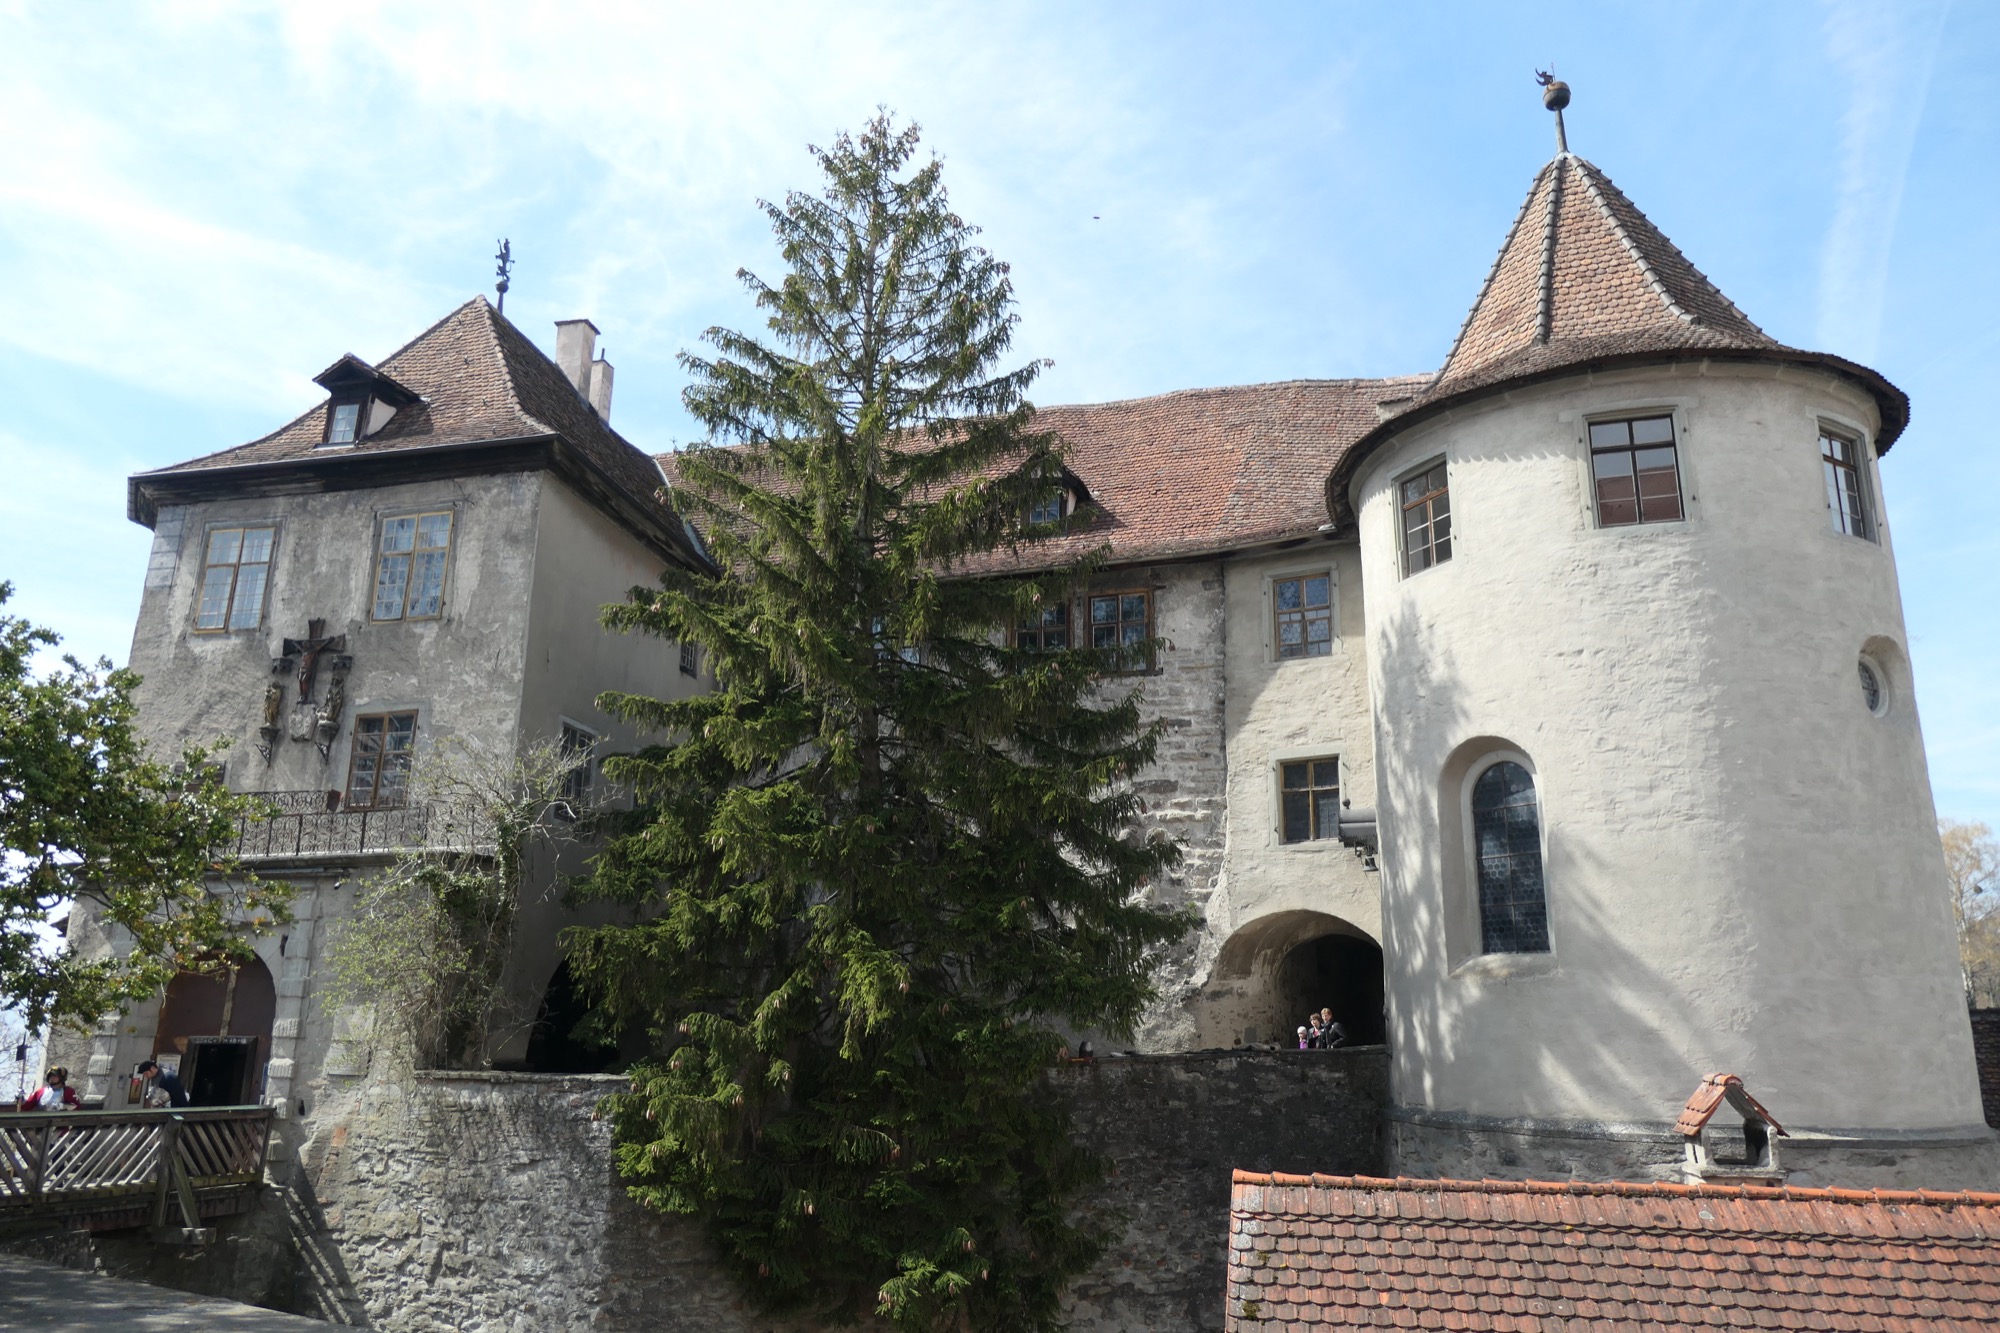 Meersburg Castle Entrance